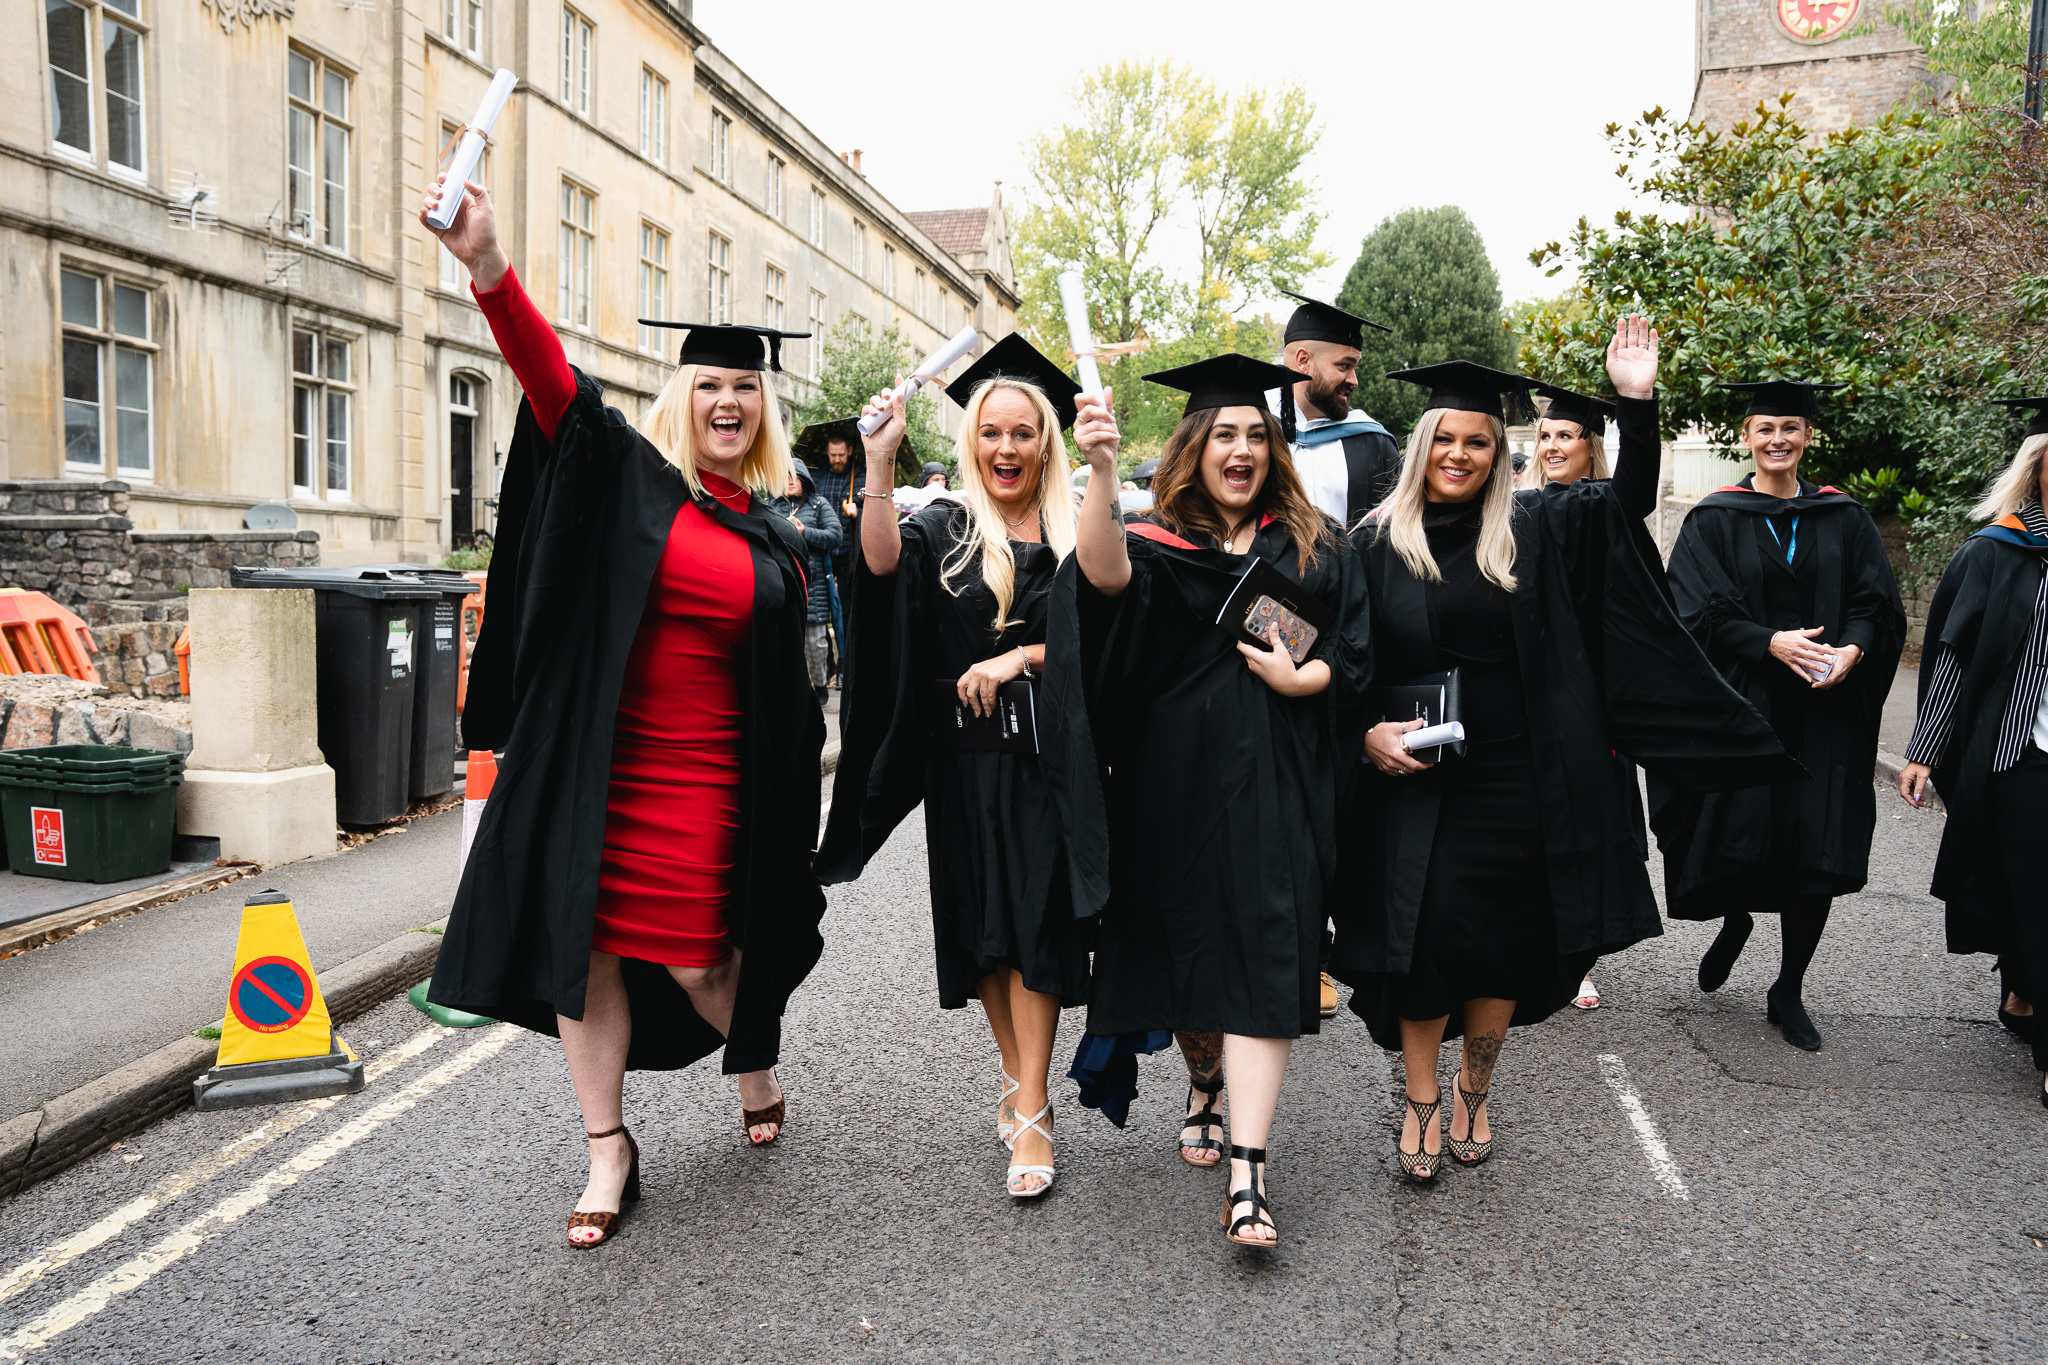 female students celebrating at university graduation